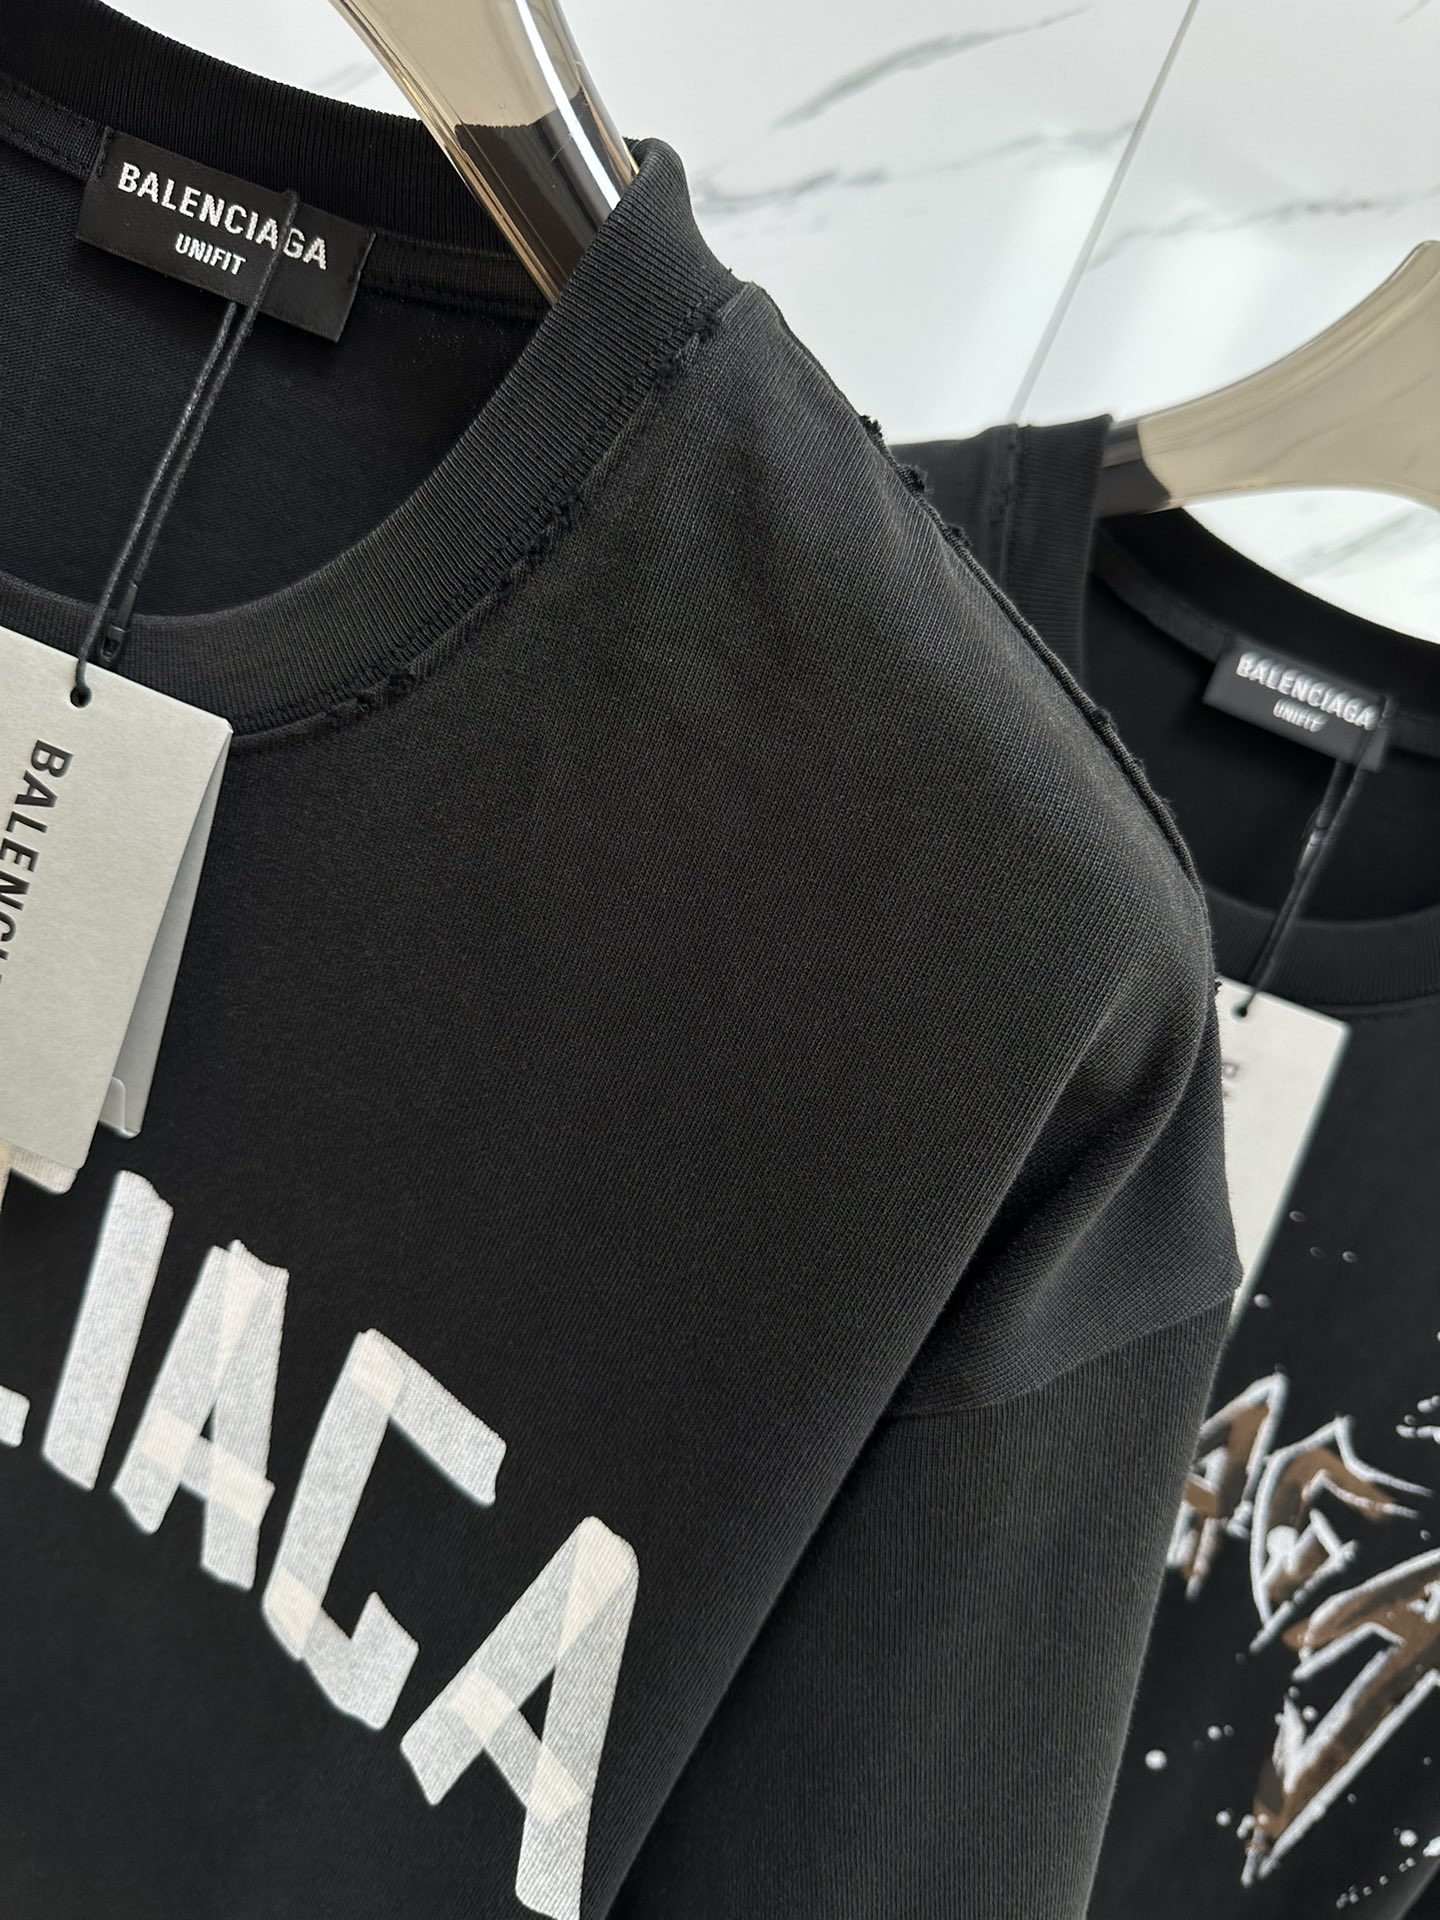 NEW夏の バレンシアガ 半袖tシャツコピー トップス 品質保証 プリント ゆったり 男女兼用 ファッション ブラック_5